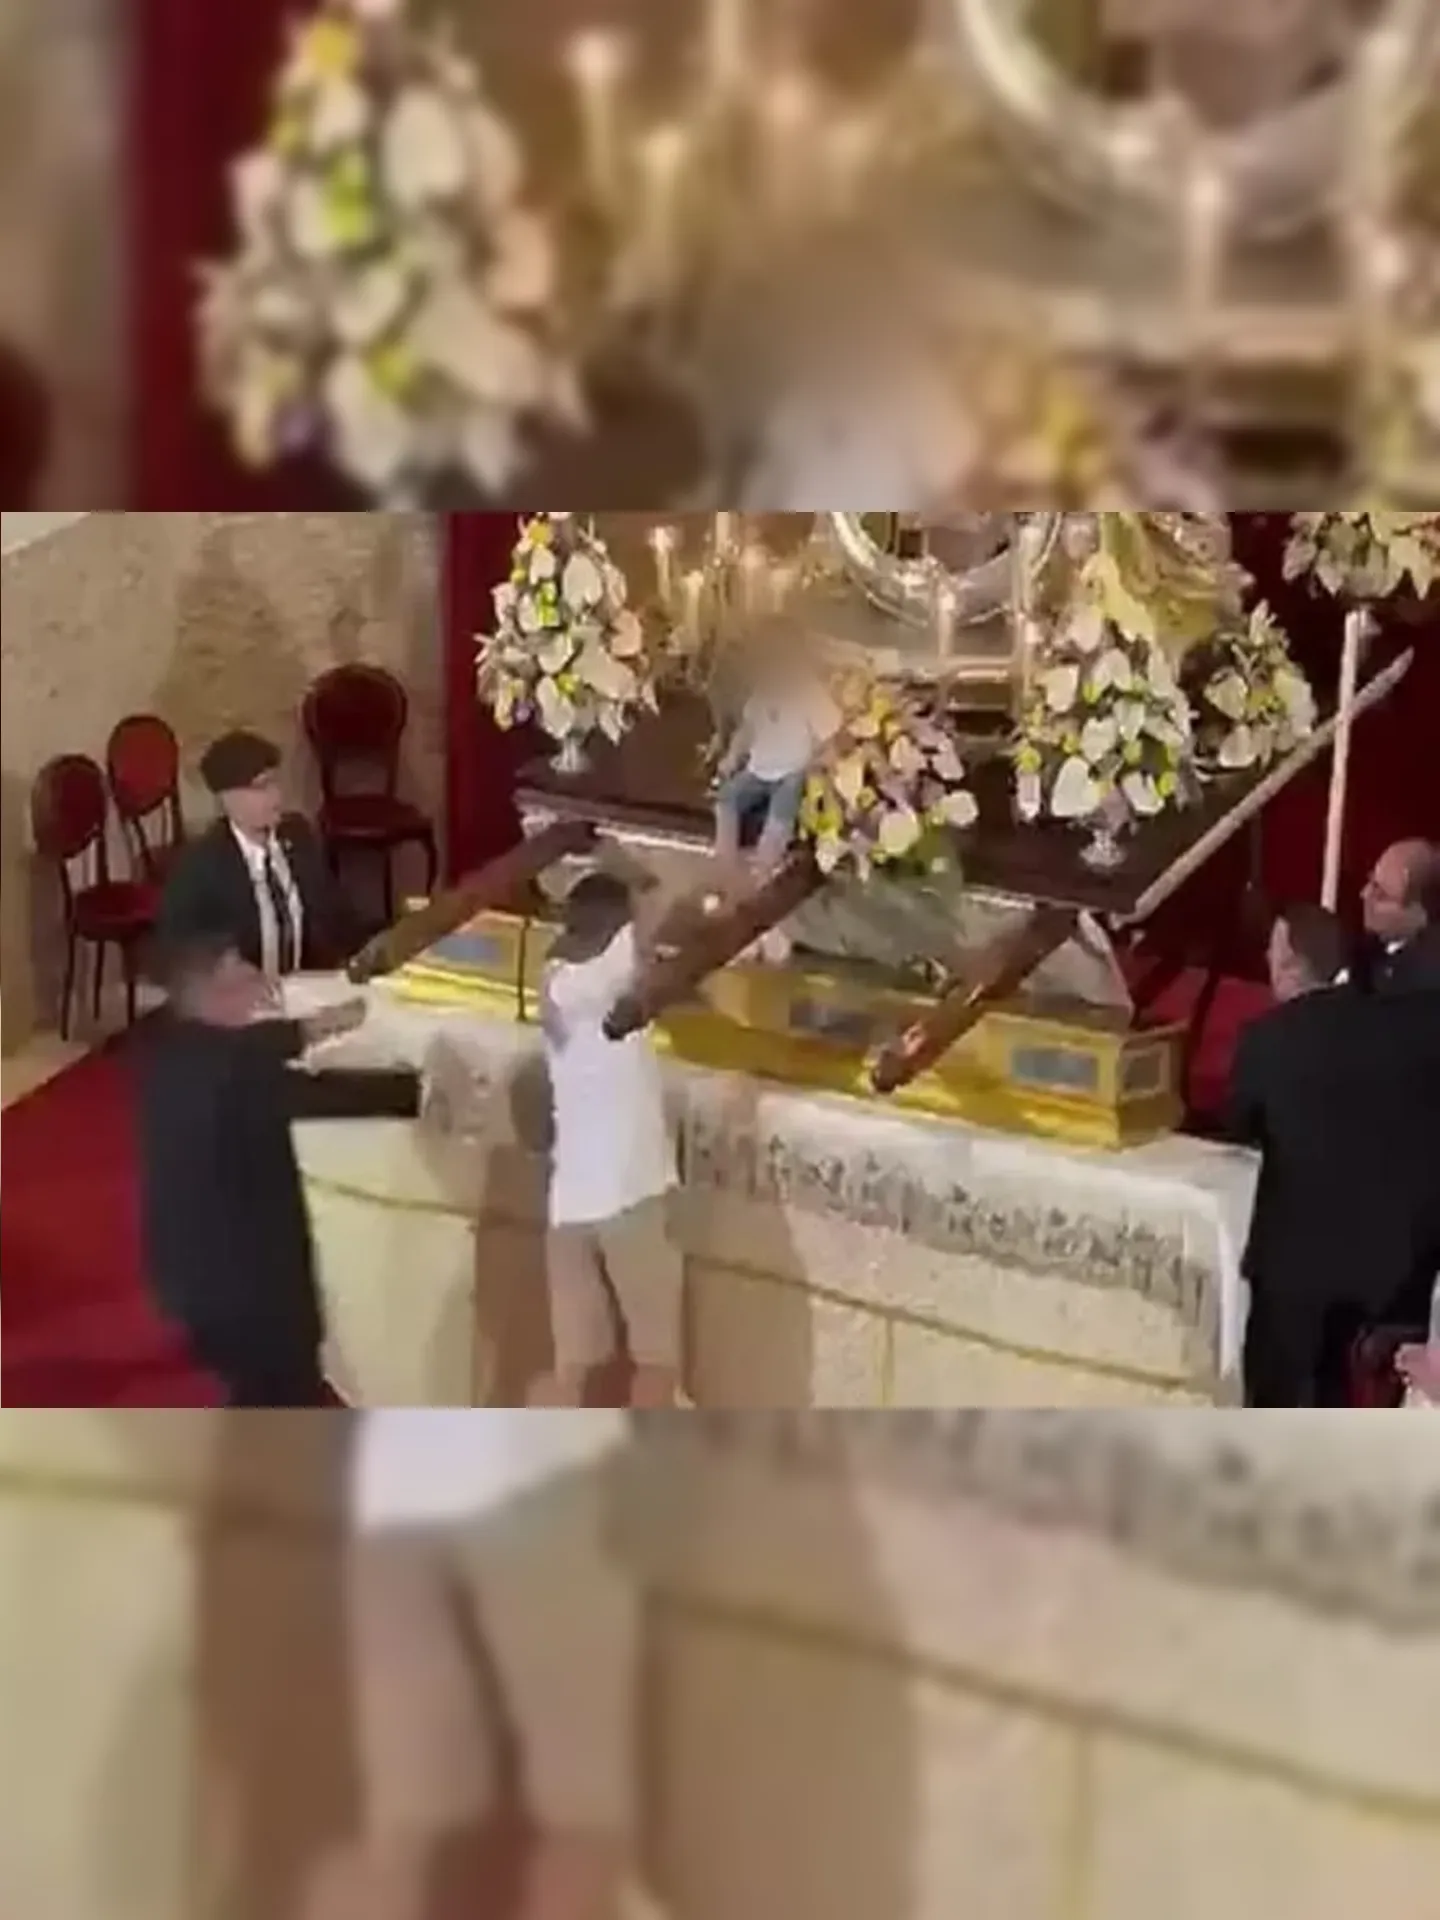 Após o episódio, o homem se ajoelhou diante do altar